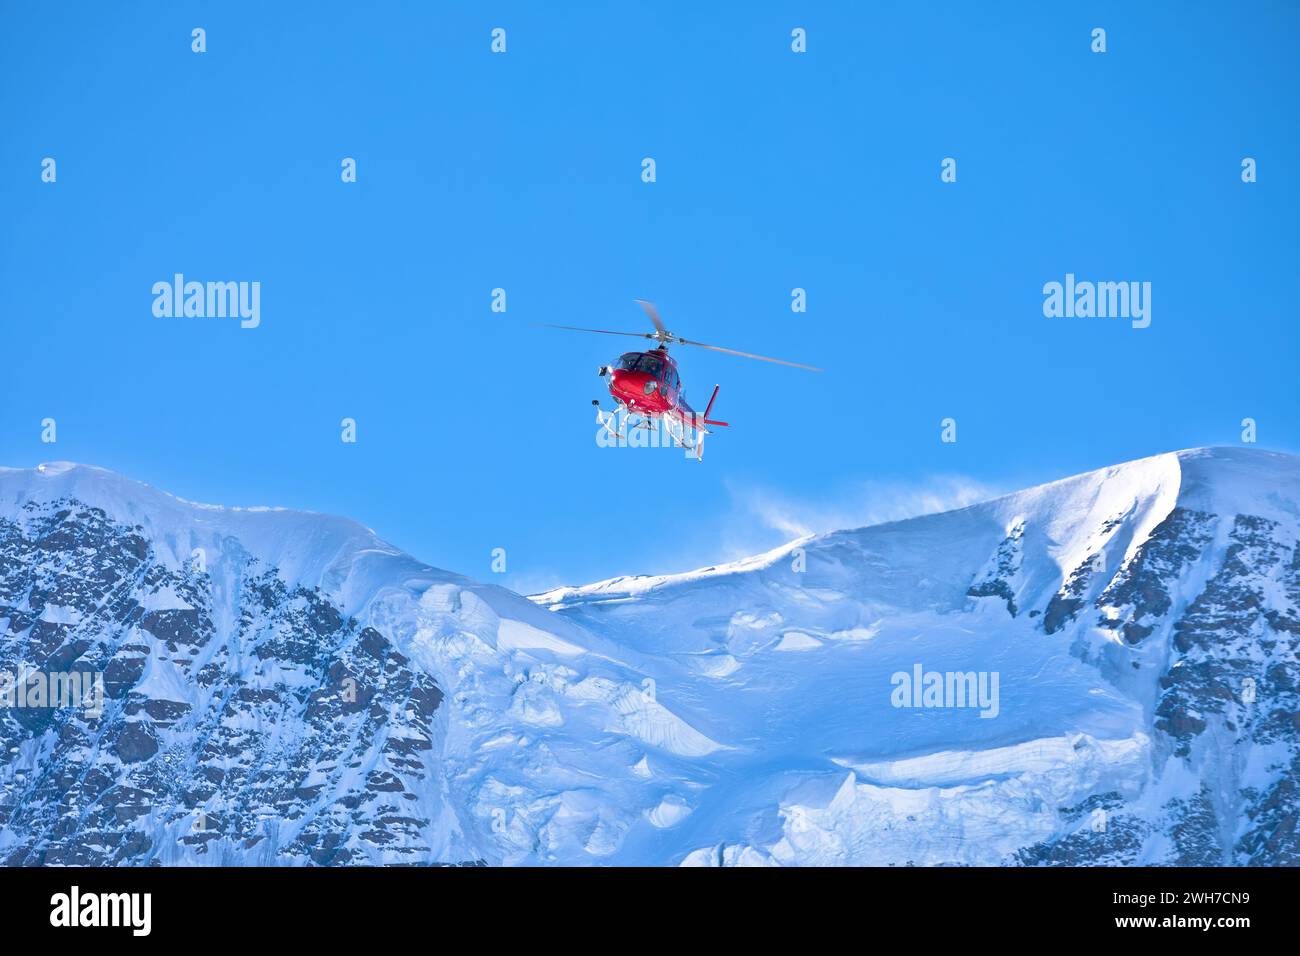 Hélicoptère volant dans la zone alpine Matterhorn Glacier Paradise, village de Zermatt, Suisse Banque D'Images